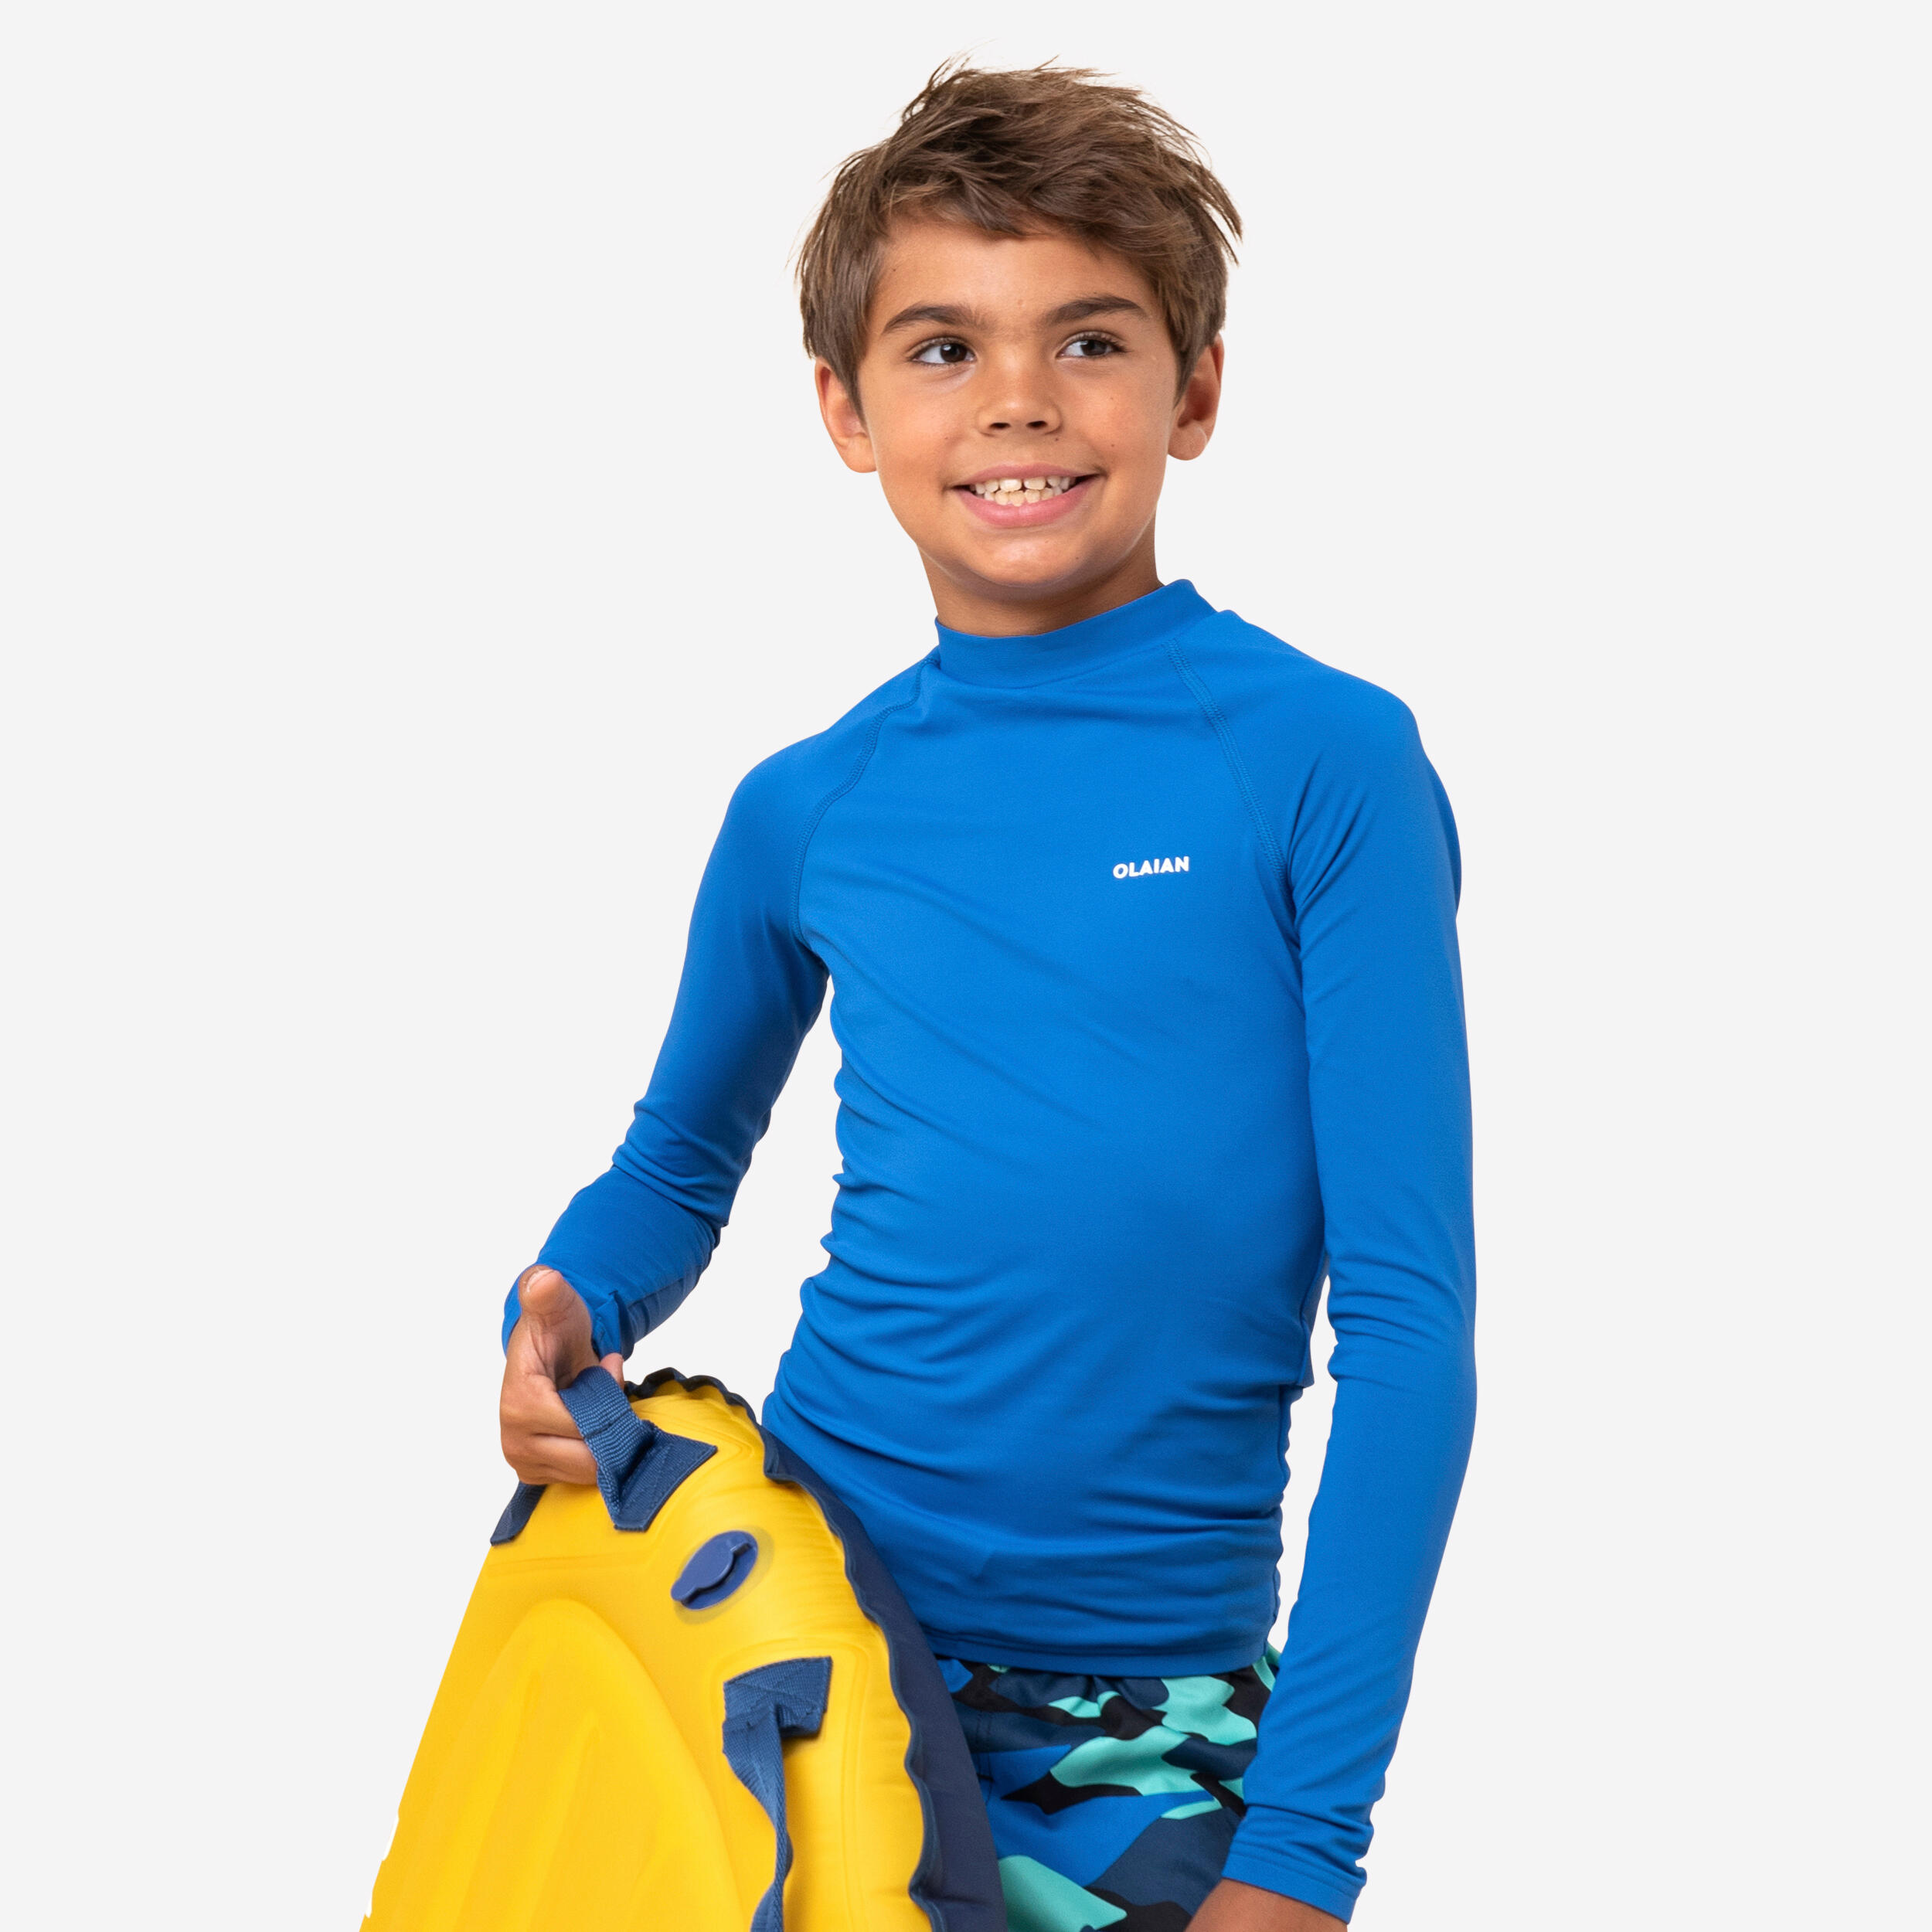 Áo thun Polyester 88% chất lượng cao 12% Spandex Bass PRO Fishing Shirts  Hộp câu cá chép để Bảo vệ chống tia UV ngoài trời trên bãi biển nhanh chóng  - Trung Quốc Quần áo bảo hộ y một kiện hàng giá